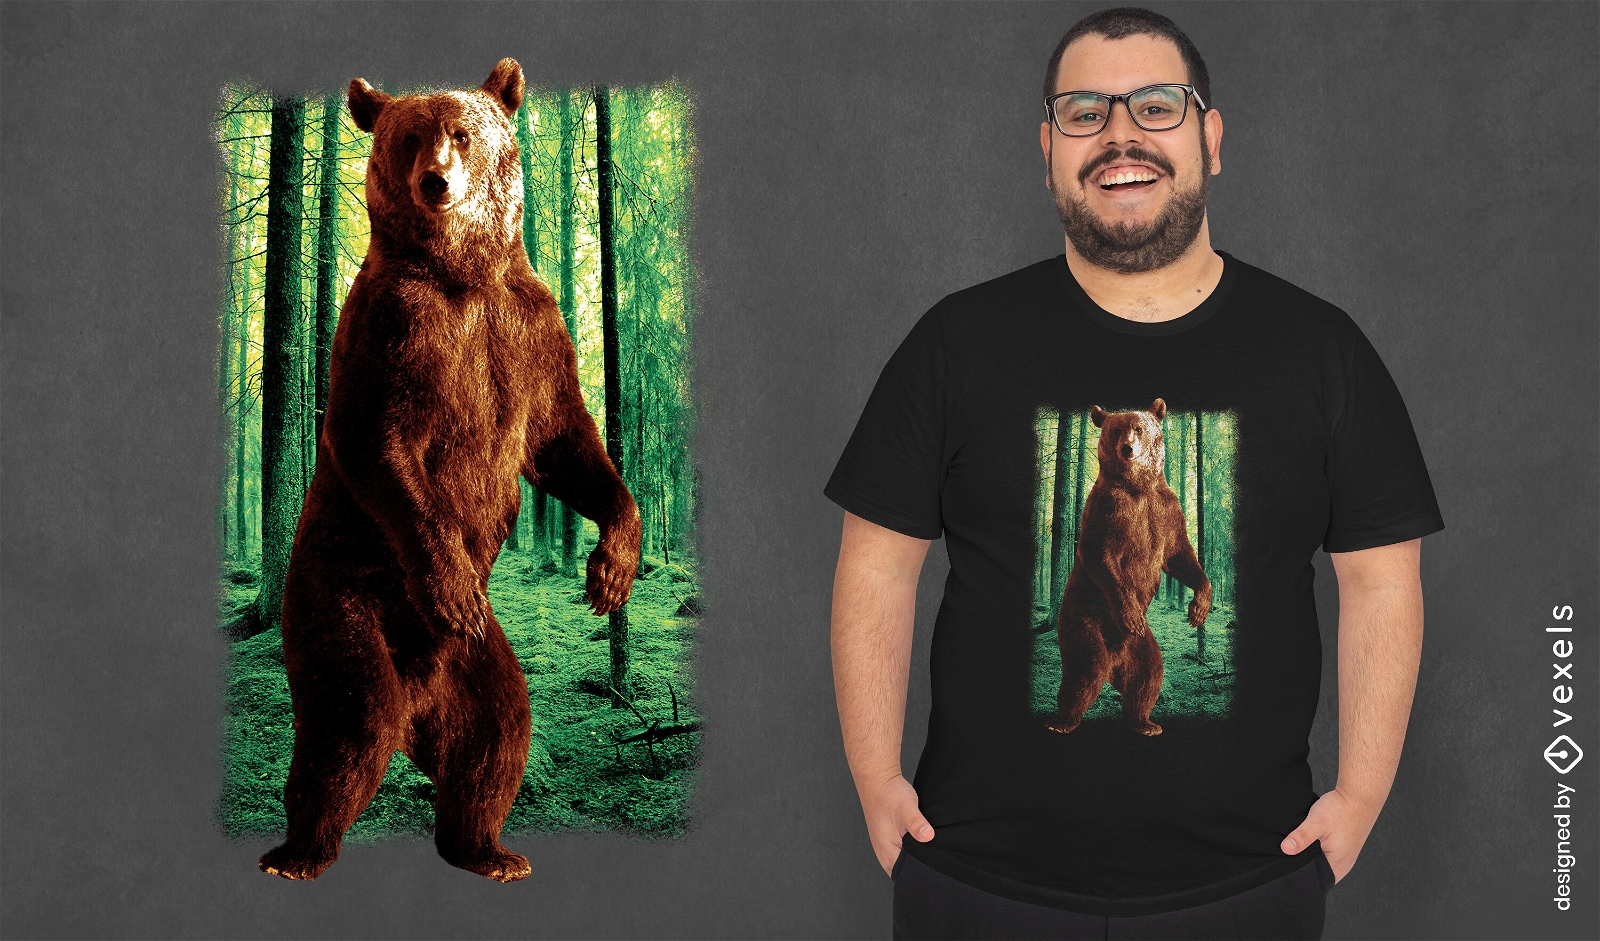 Dise?o realista de camiseta de bosque de osos.